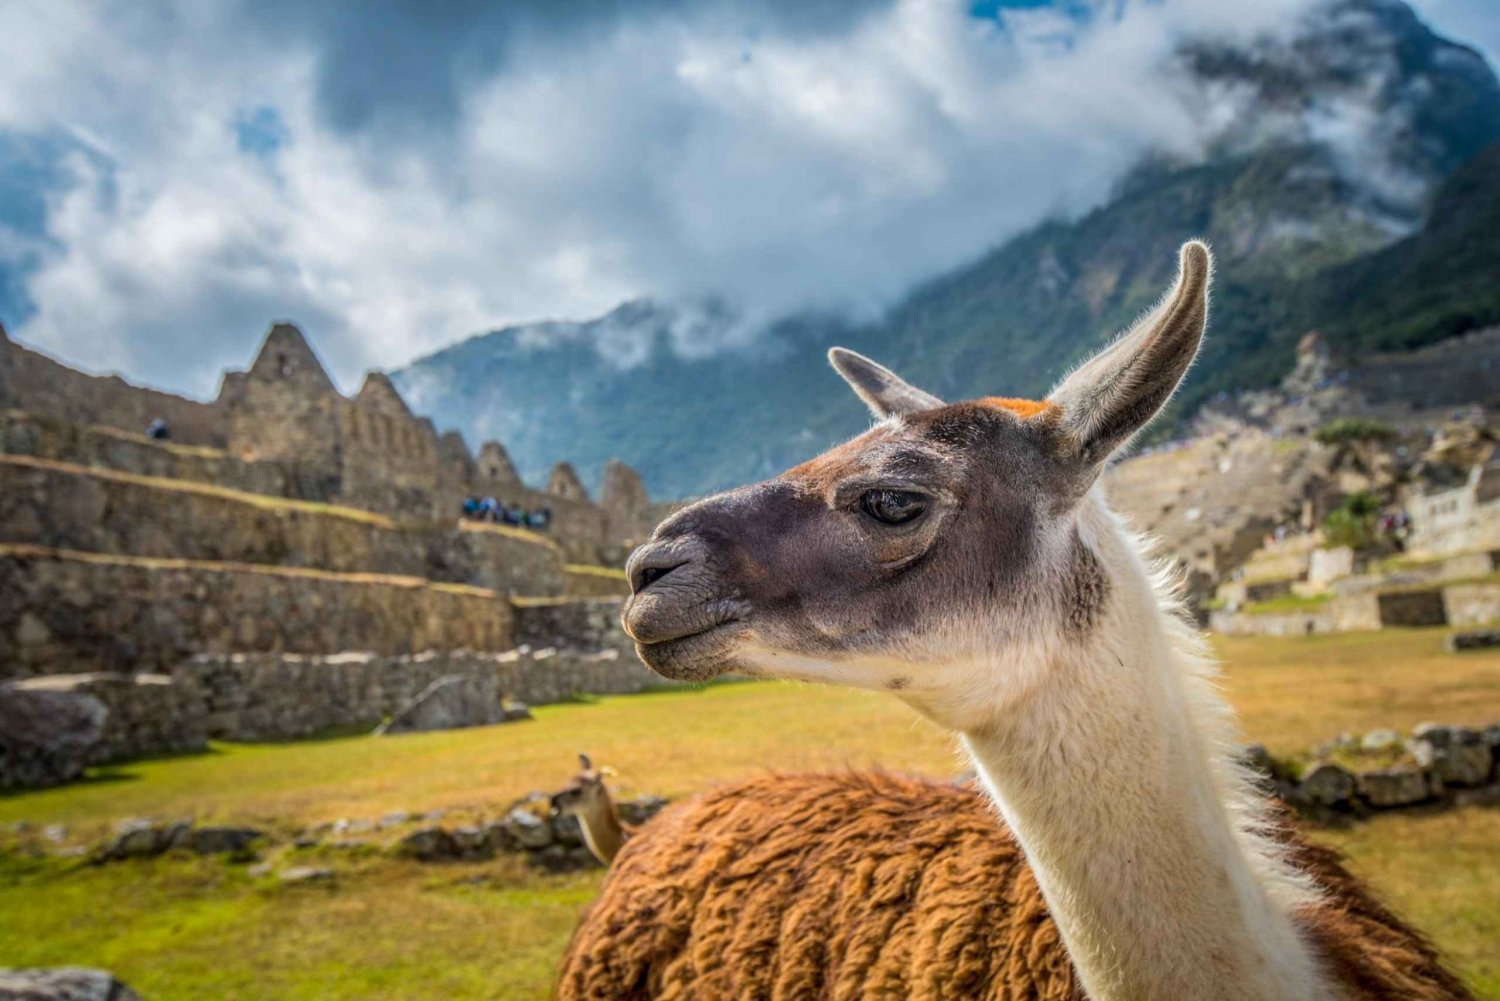 Cusco: Excursão a Machu Picchu com ingressos